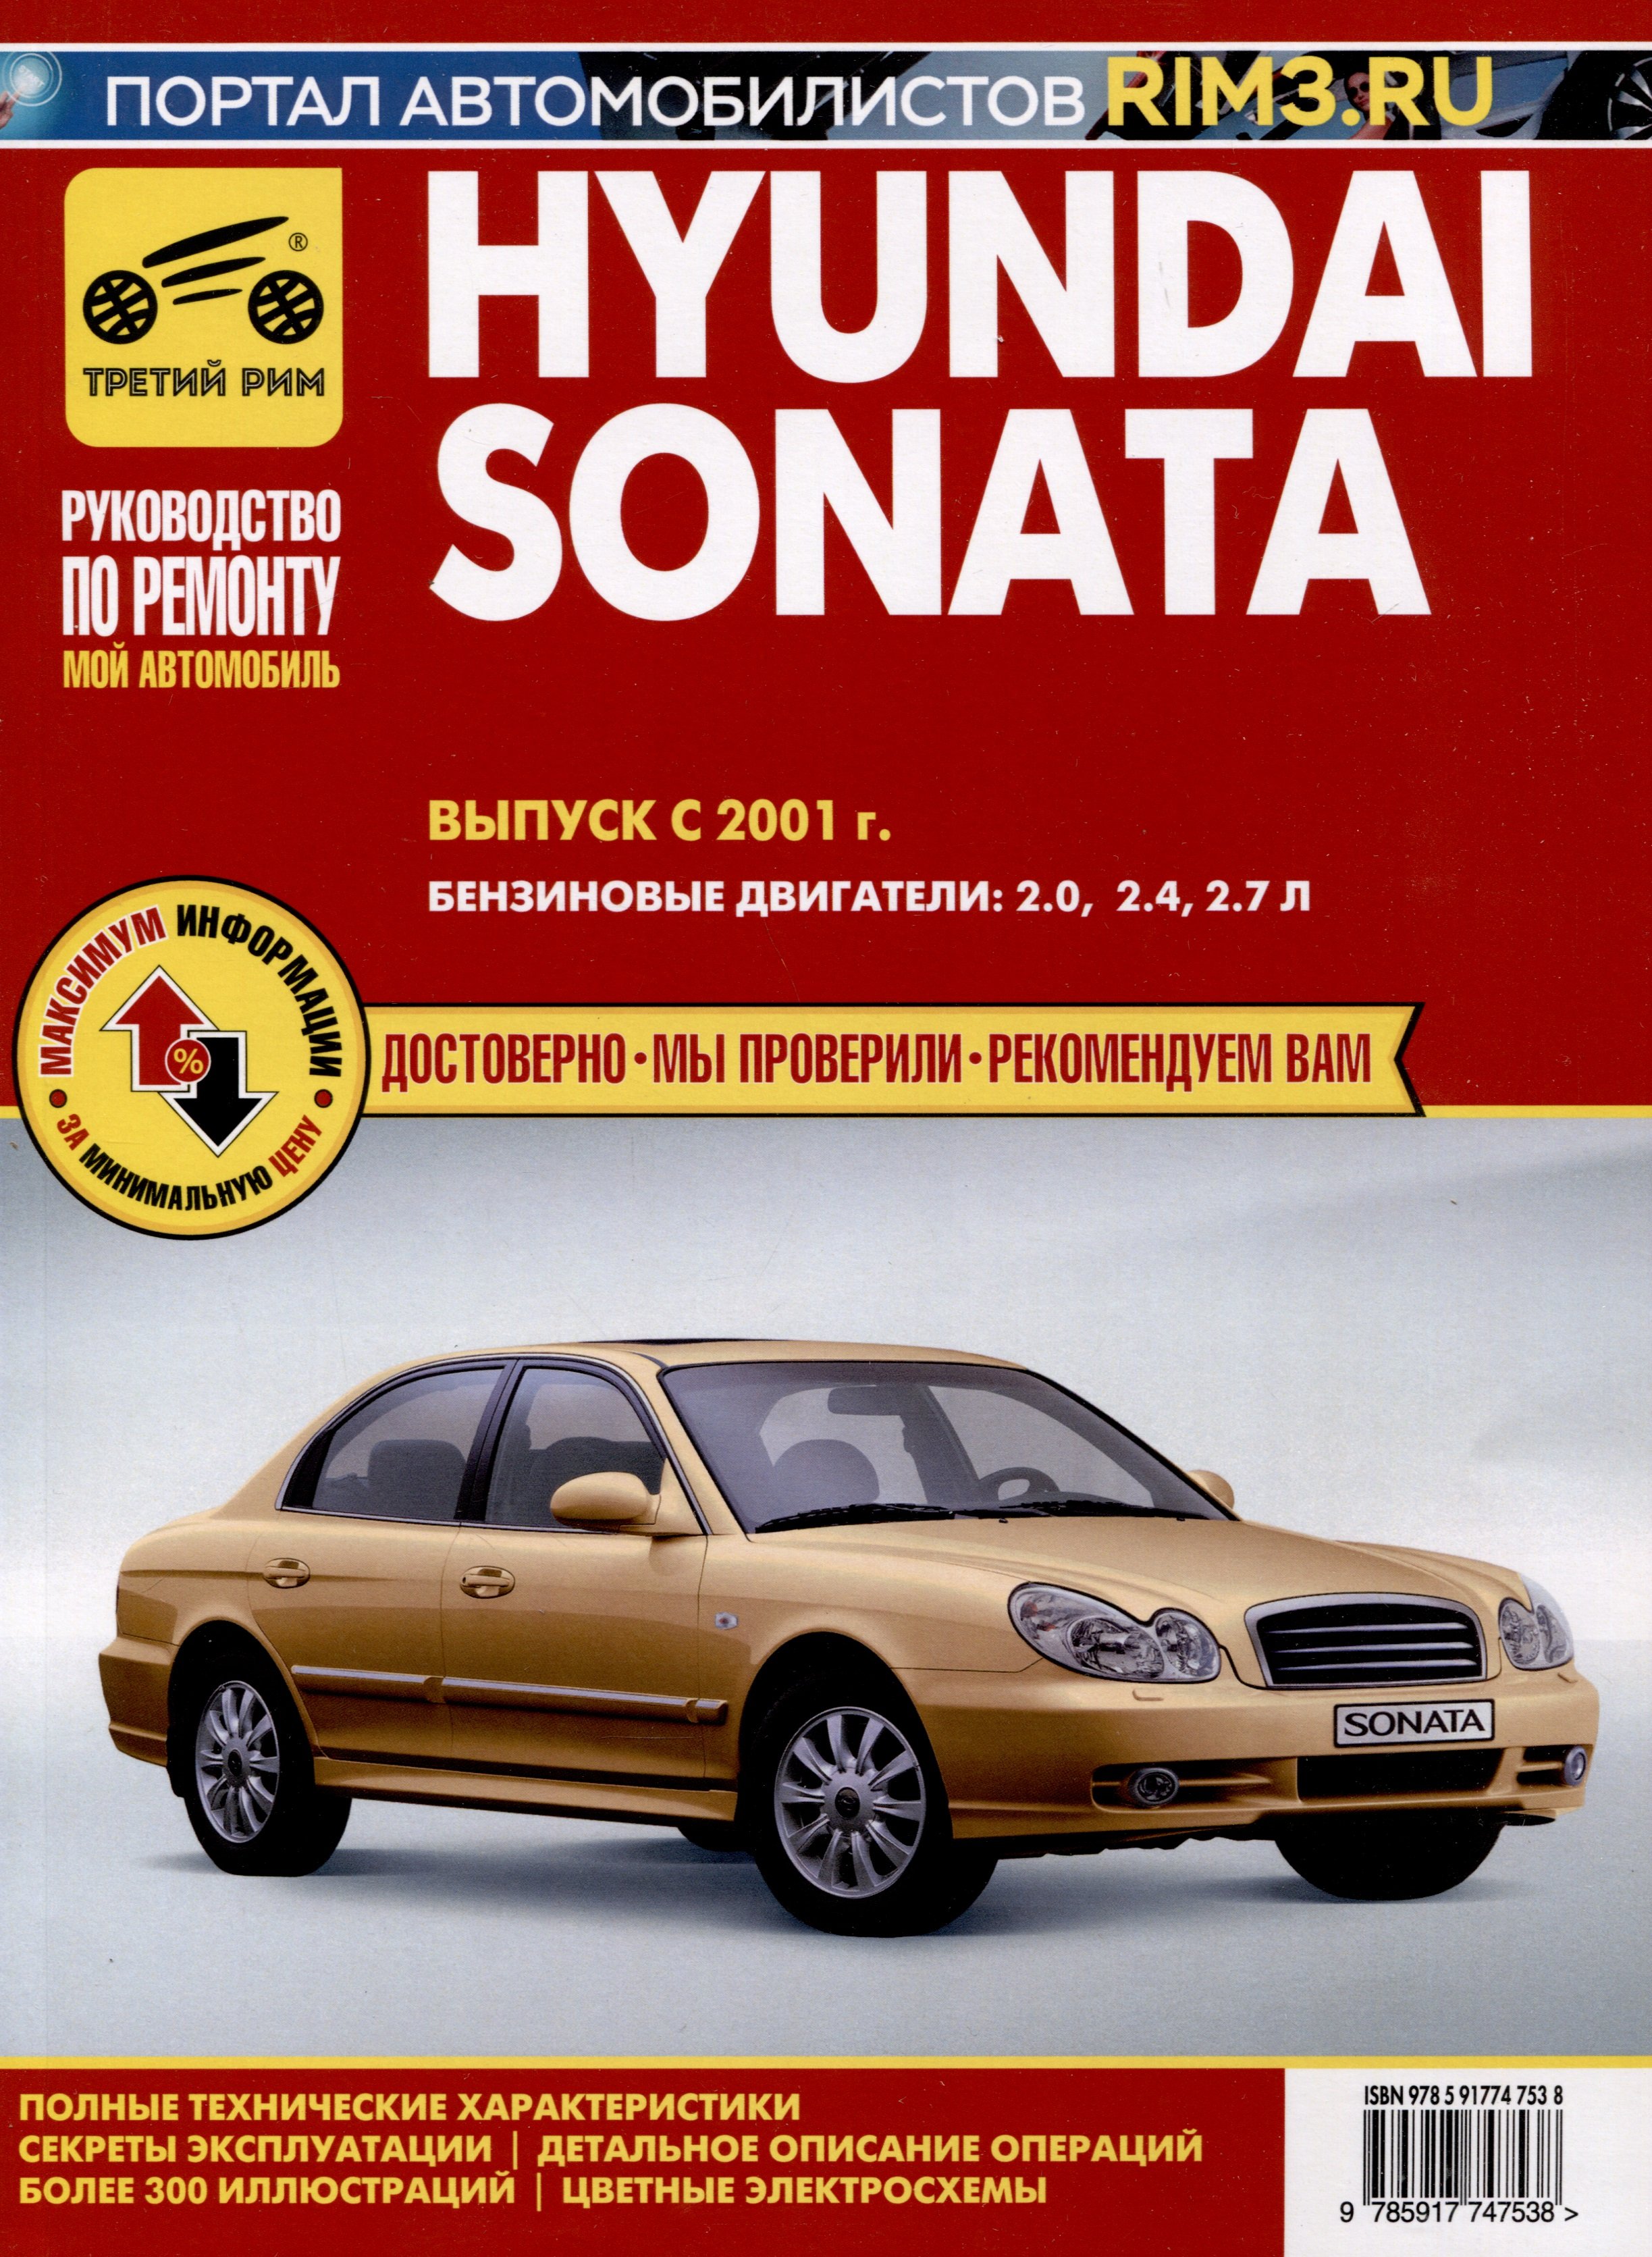 Hyundai Sonata  2001 .   ,    .   2.0, 2.4, 2.7, ., /